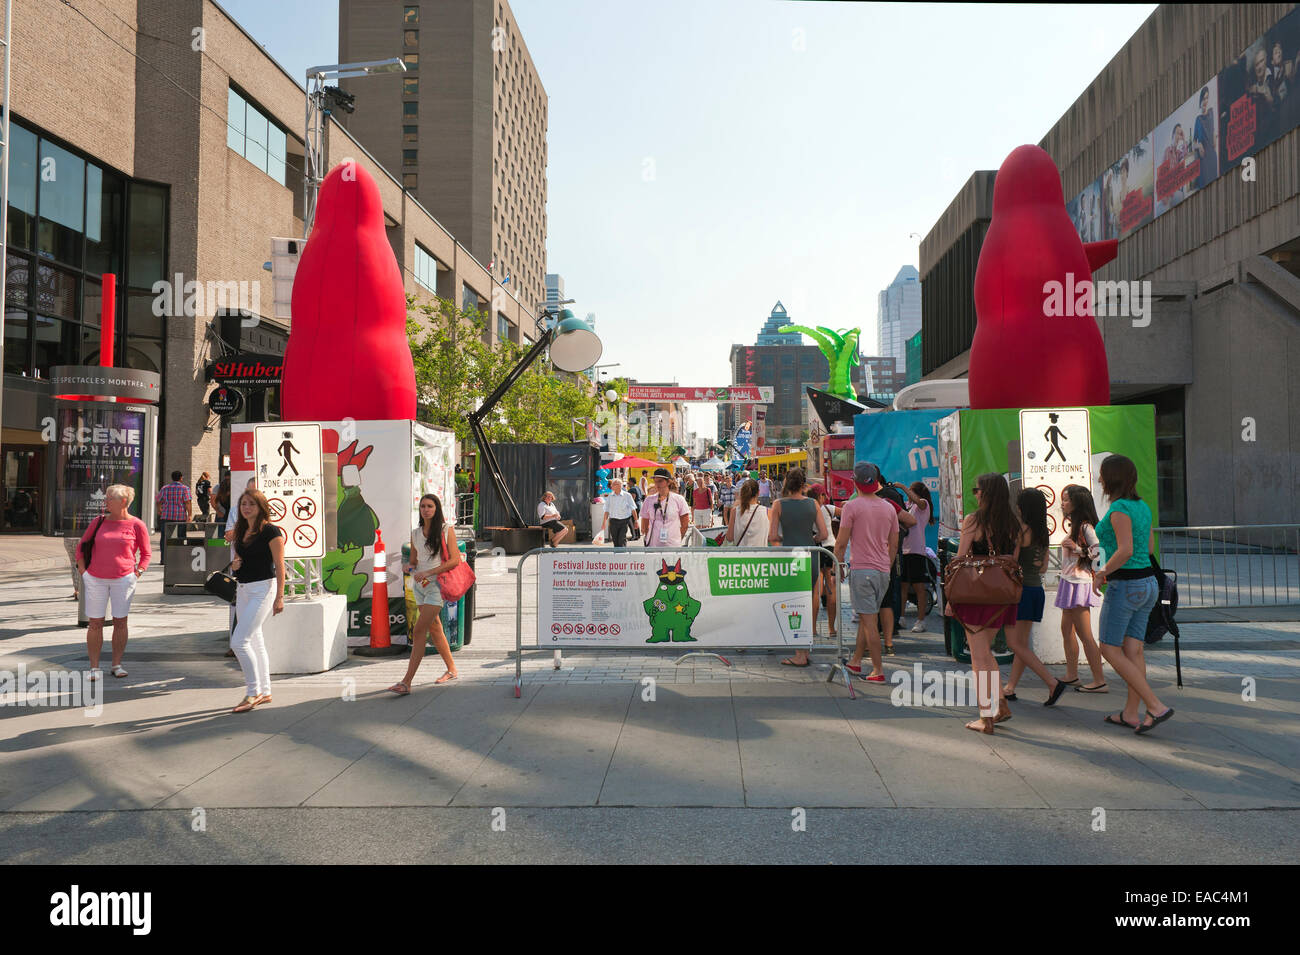 Ingresso al solo per ride sito del Festival su Ste Catherine Street, Montreal, provincia del Québec in Canada. Foto Stock